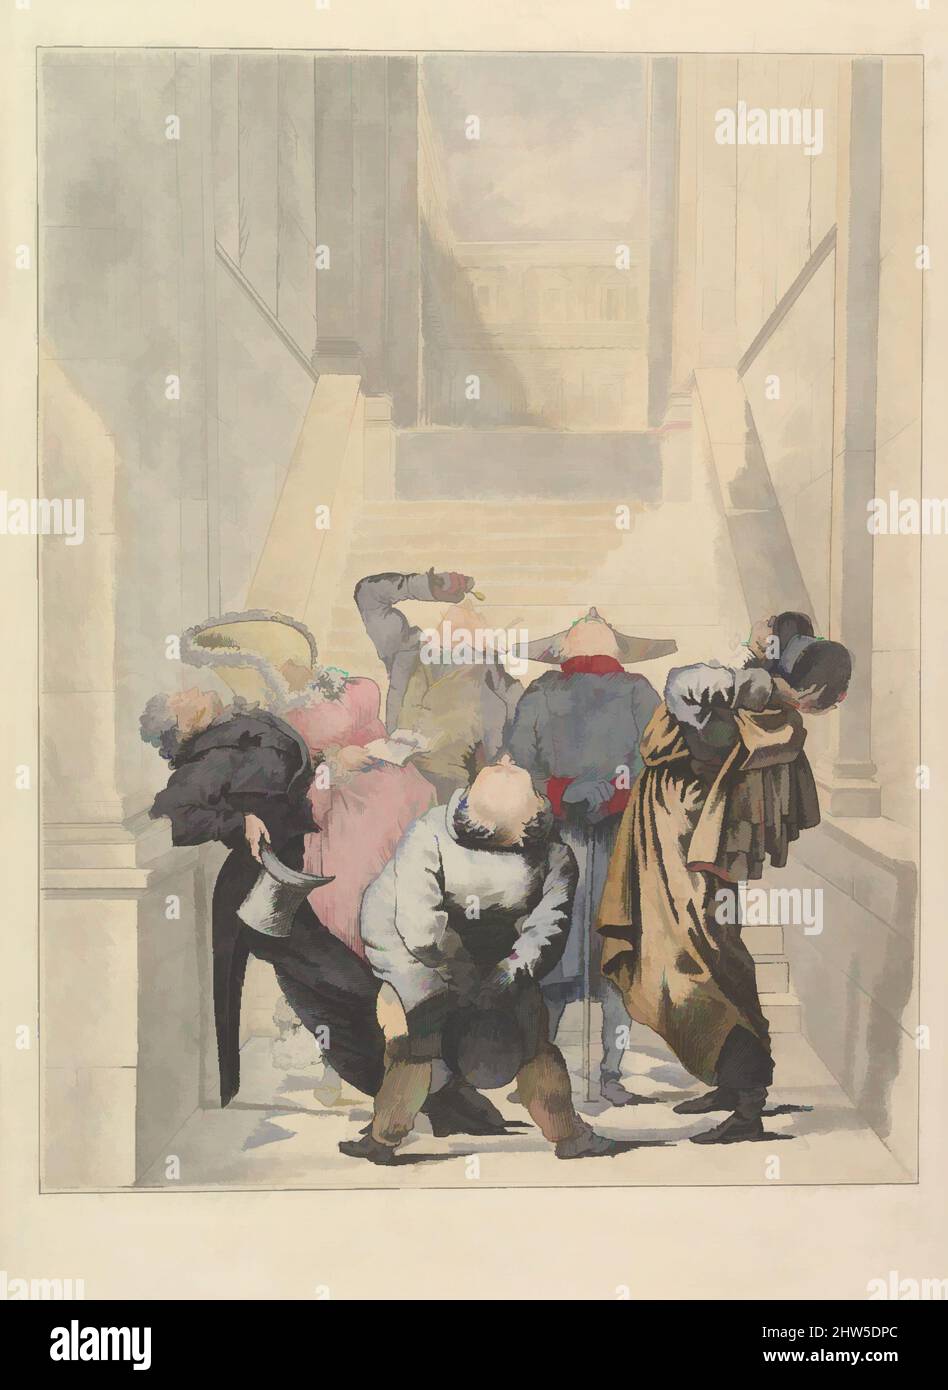 Arte ispirata ai visitatori del Salone, ammirando il soffitto (Les Amateurs de plafonds au Salon), 27 agosto 1824, incisione, colorato a mano, foglio: 15 9/16 x 11 1/4 pollici (39,5 x 28,6 cm), stampe, incise da Louis Philibert Debucourt (francese, Parigi 1755–1832 Parigi), dopo Carle, opere classiche modernizzate da Artotop con un tuffo di modernità. Forme, colore e valore, impatto visivo accattivante sulle emozioni artistiche attraverso la libertà delle opere d'arte in modo contemporaneo. Un messaggio senza tempo che persegue una nuova direzione selvaggiamente creativa. Artisti che si rivolgono al supporto digitale e creano l'NFT Artotop Foto Stock